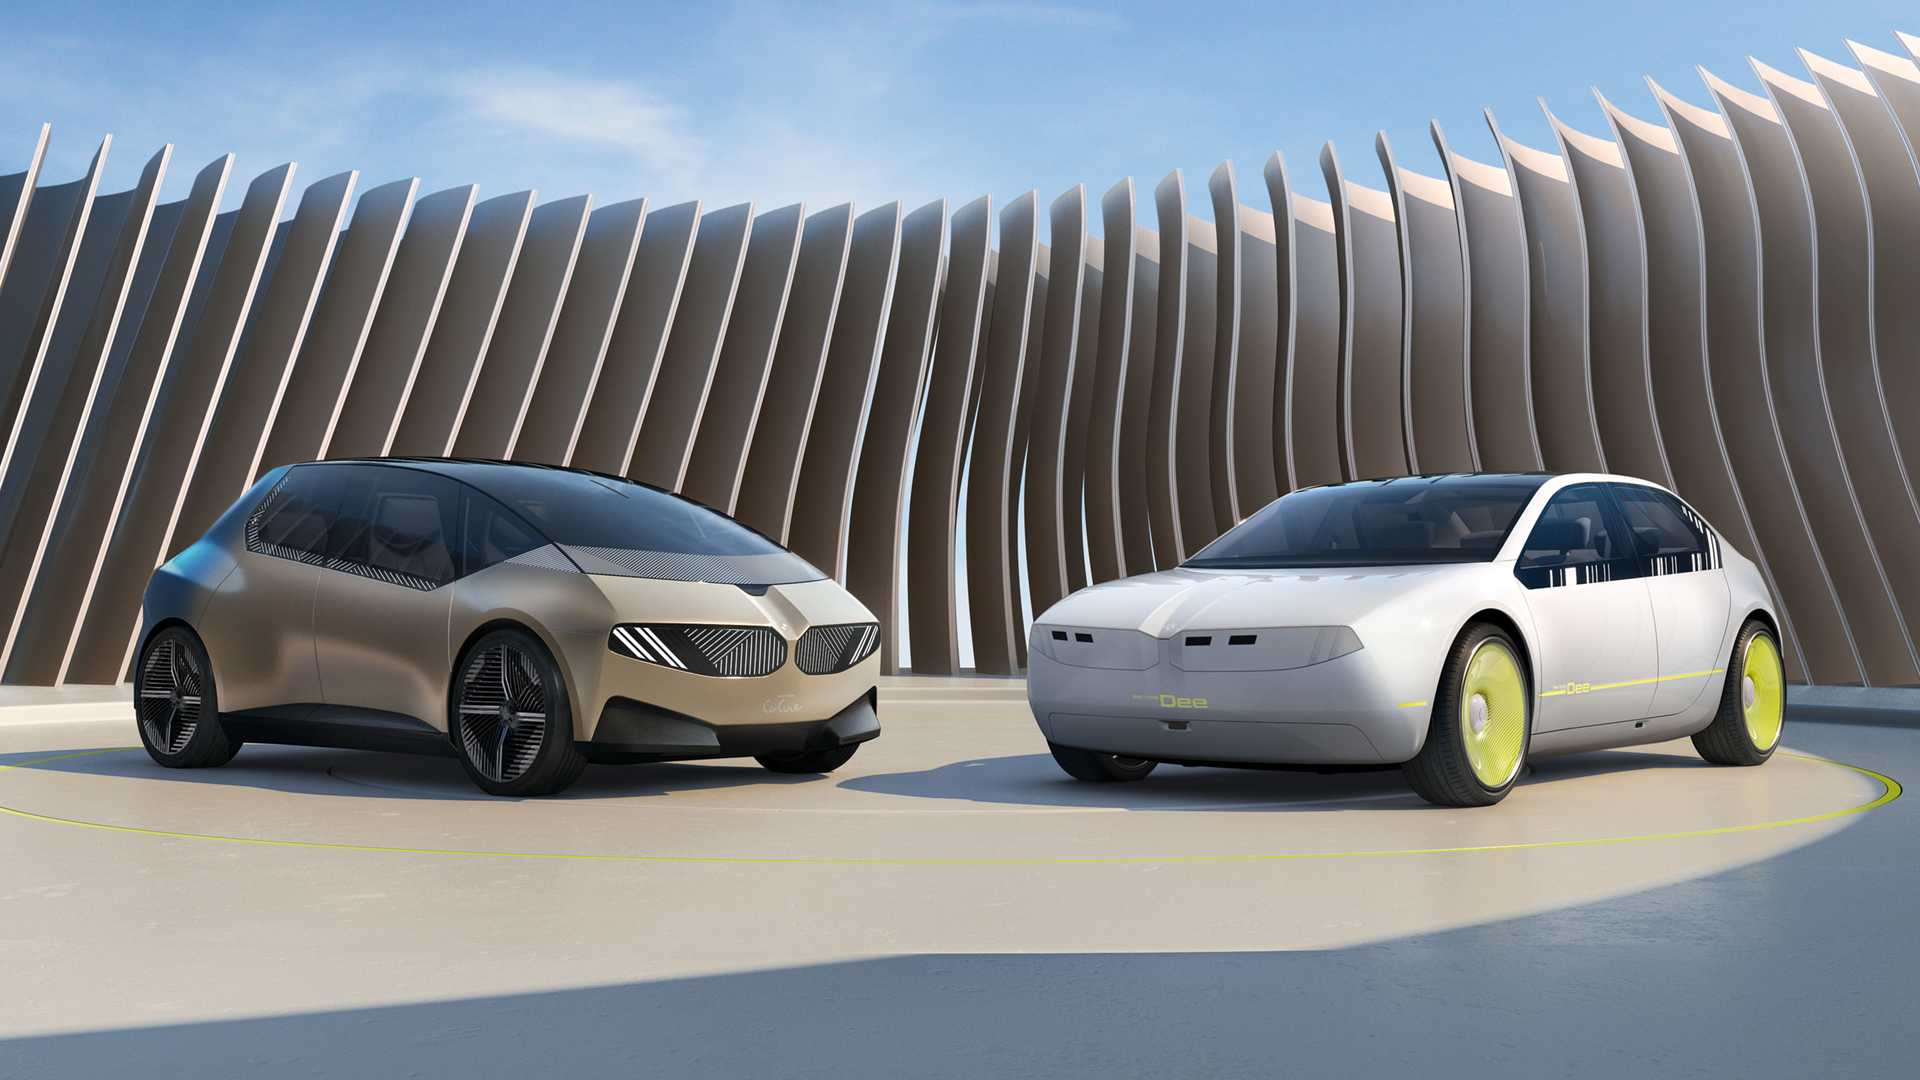 BMW a dévoilé le concept-car i Vision Dee chameleon, qui peut changer de couleur de corps et exprimer des émotions.